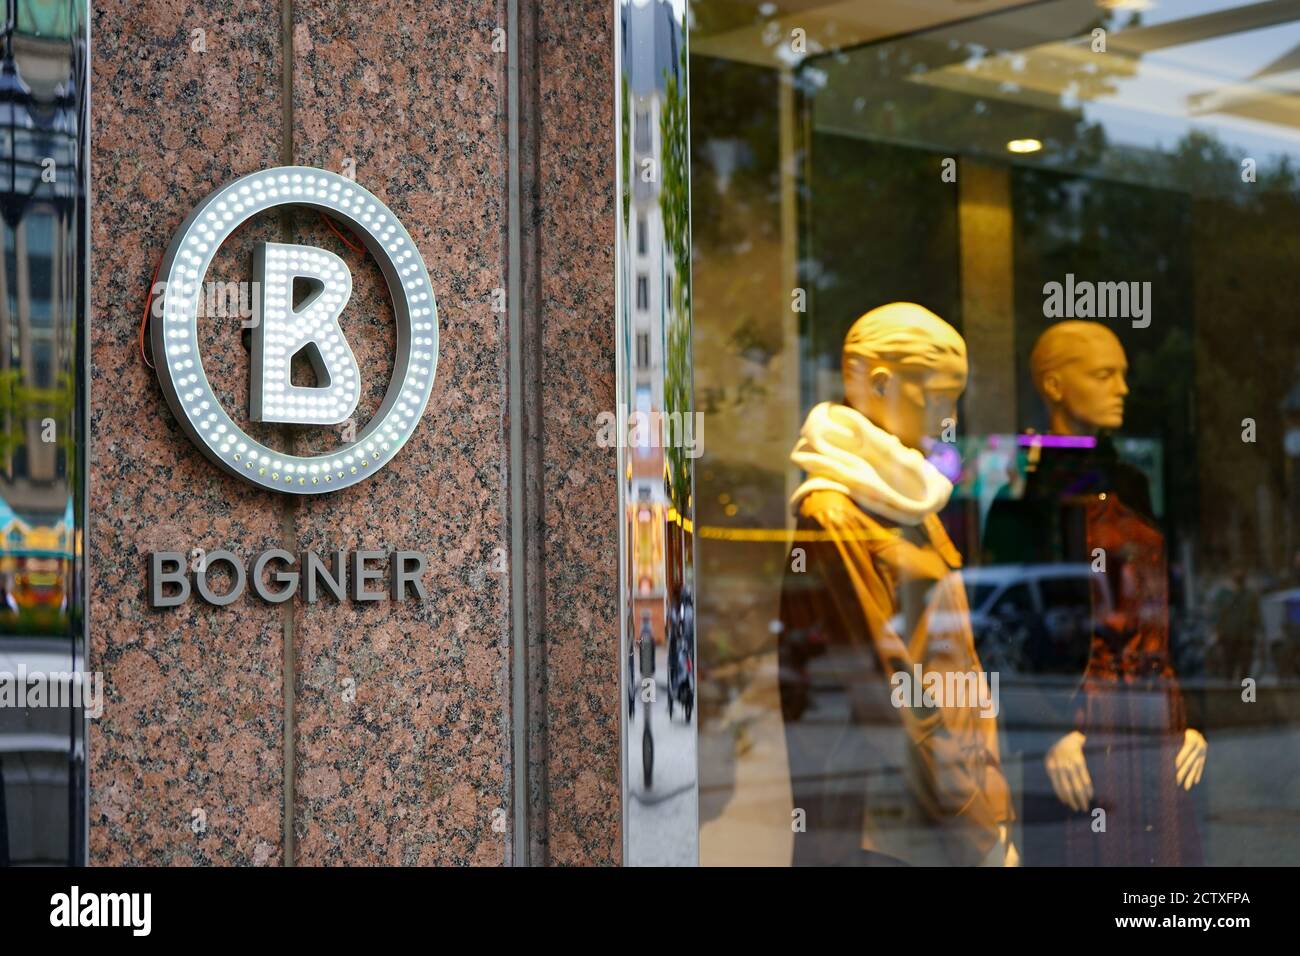 Boutique de mode Bogner avec logo de marque et vitrine sur Königsallee à Düsseldorf. Banque D'Images